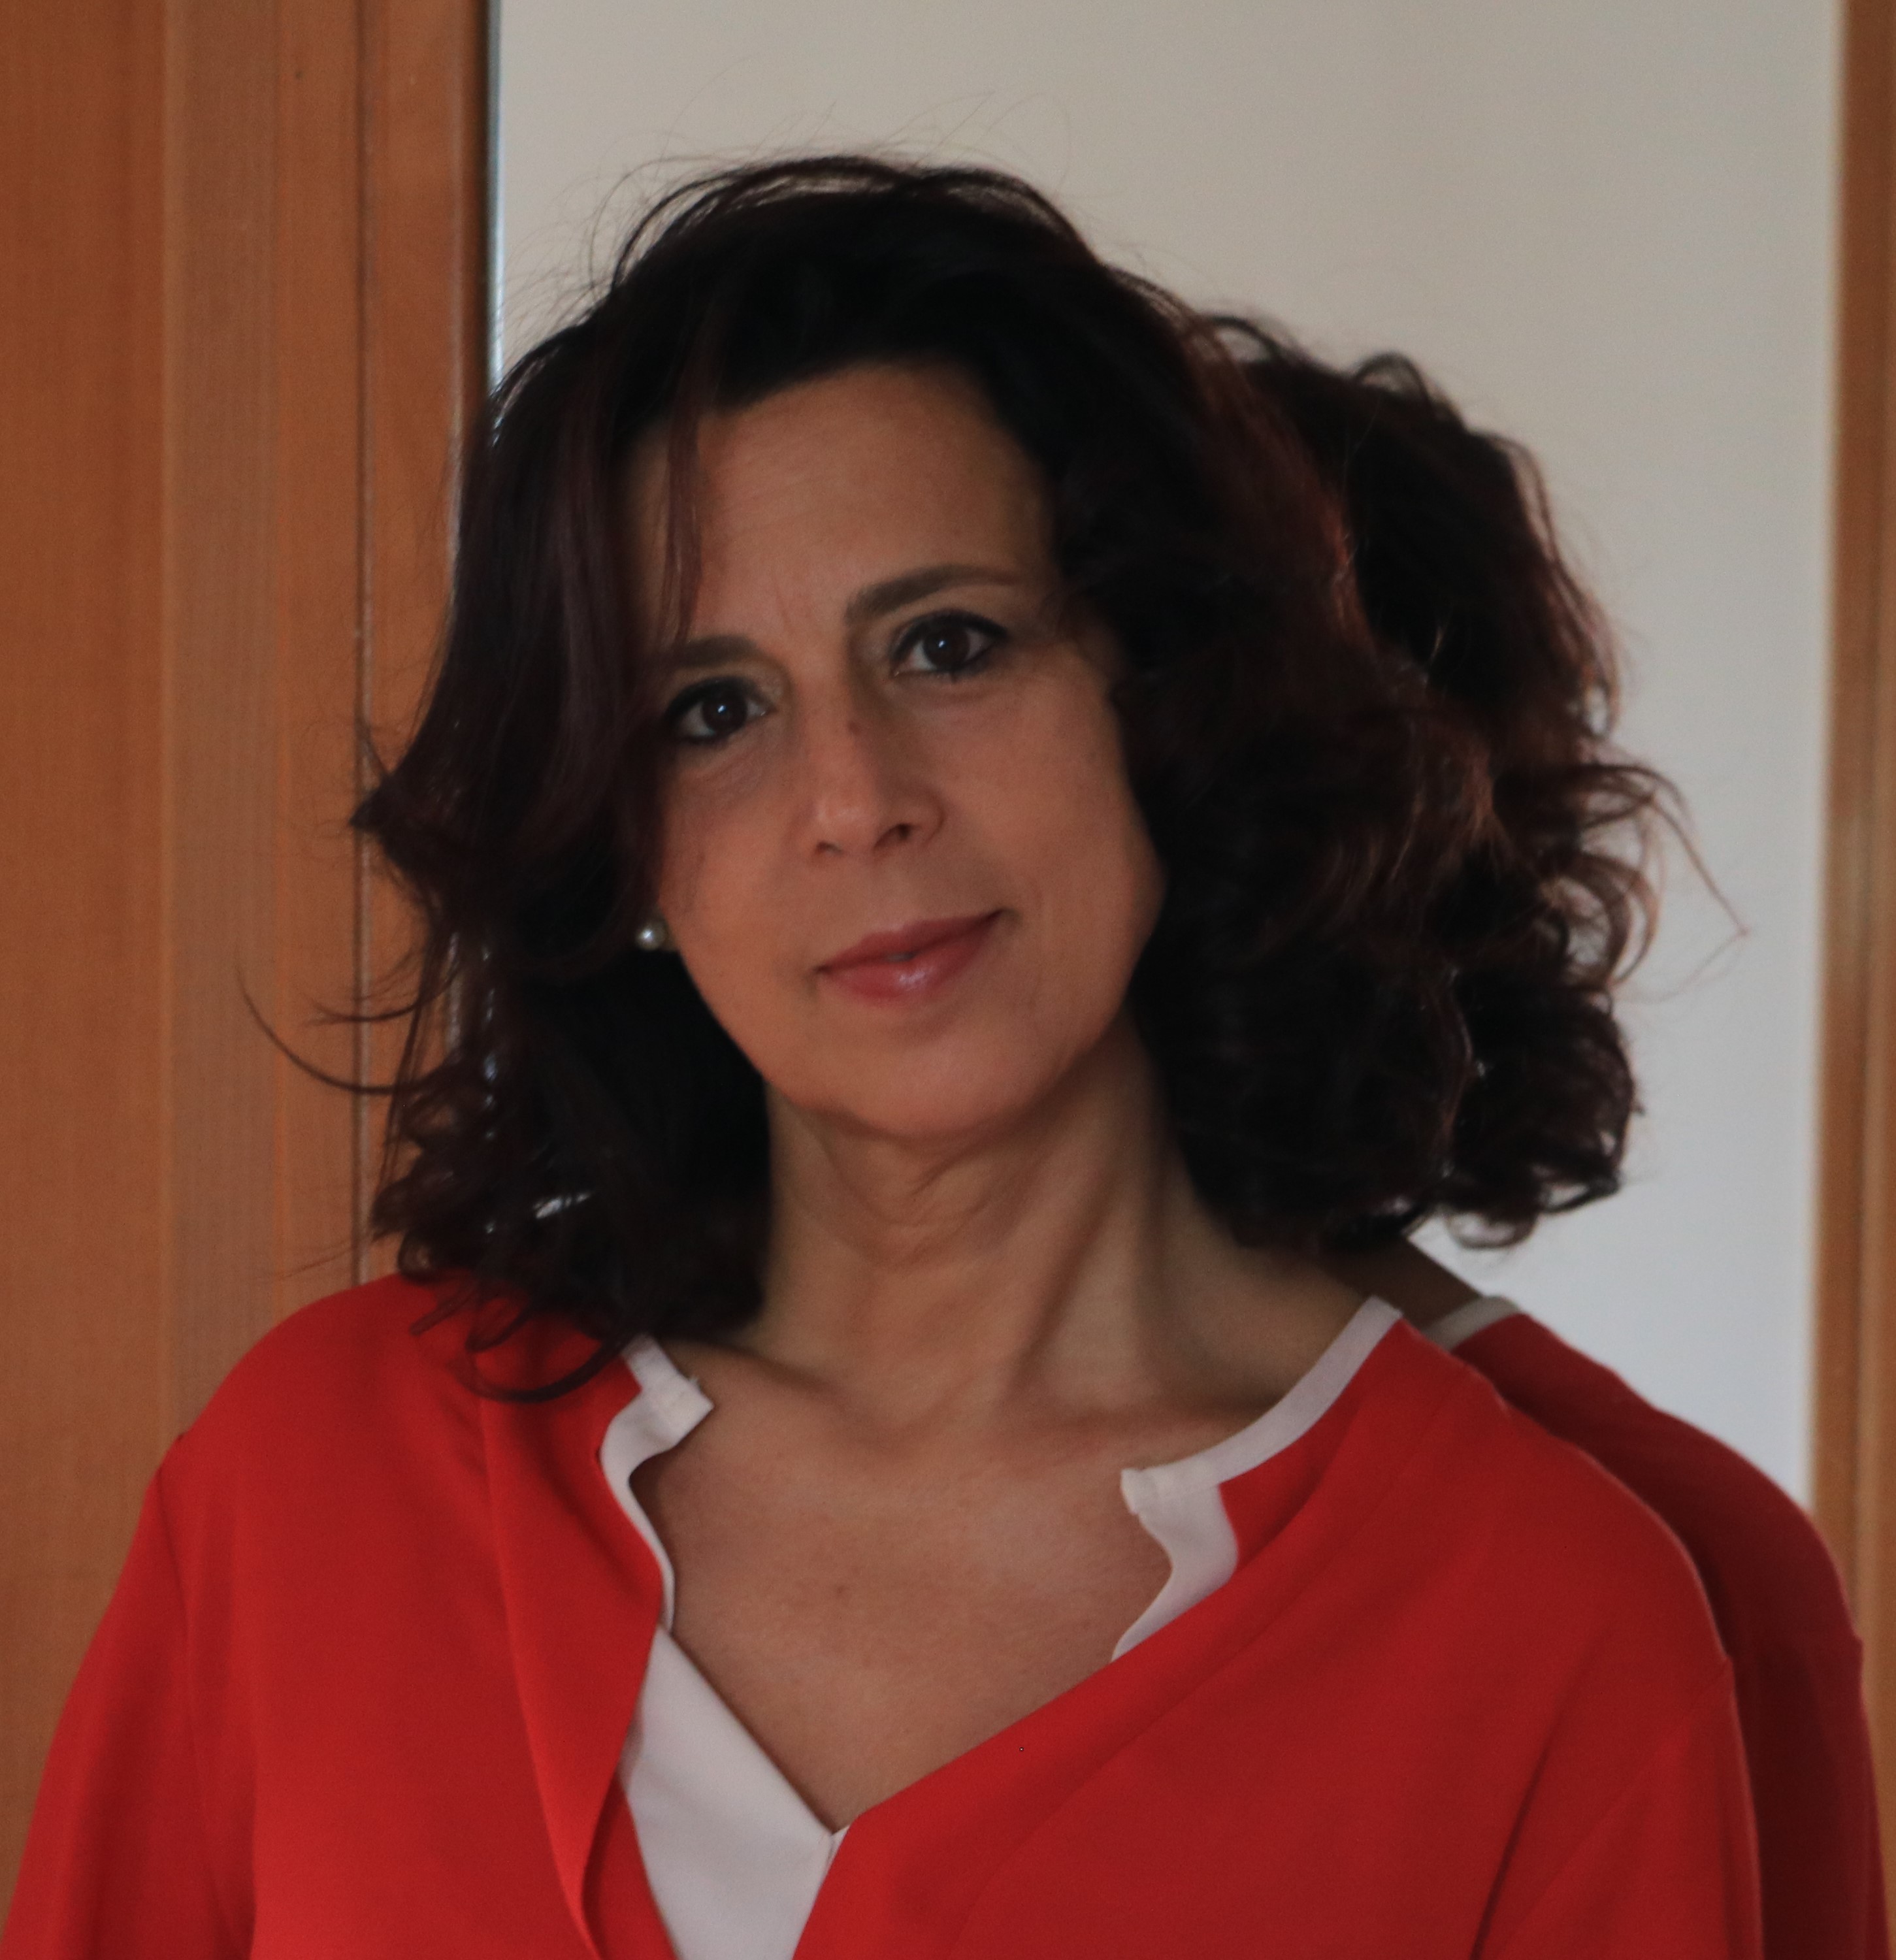 Alessandra Messina Informazioni sull'Autore